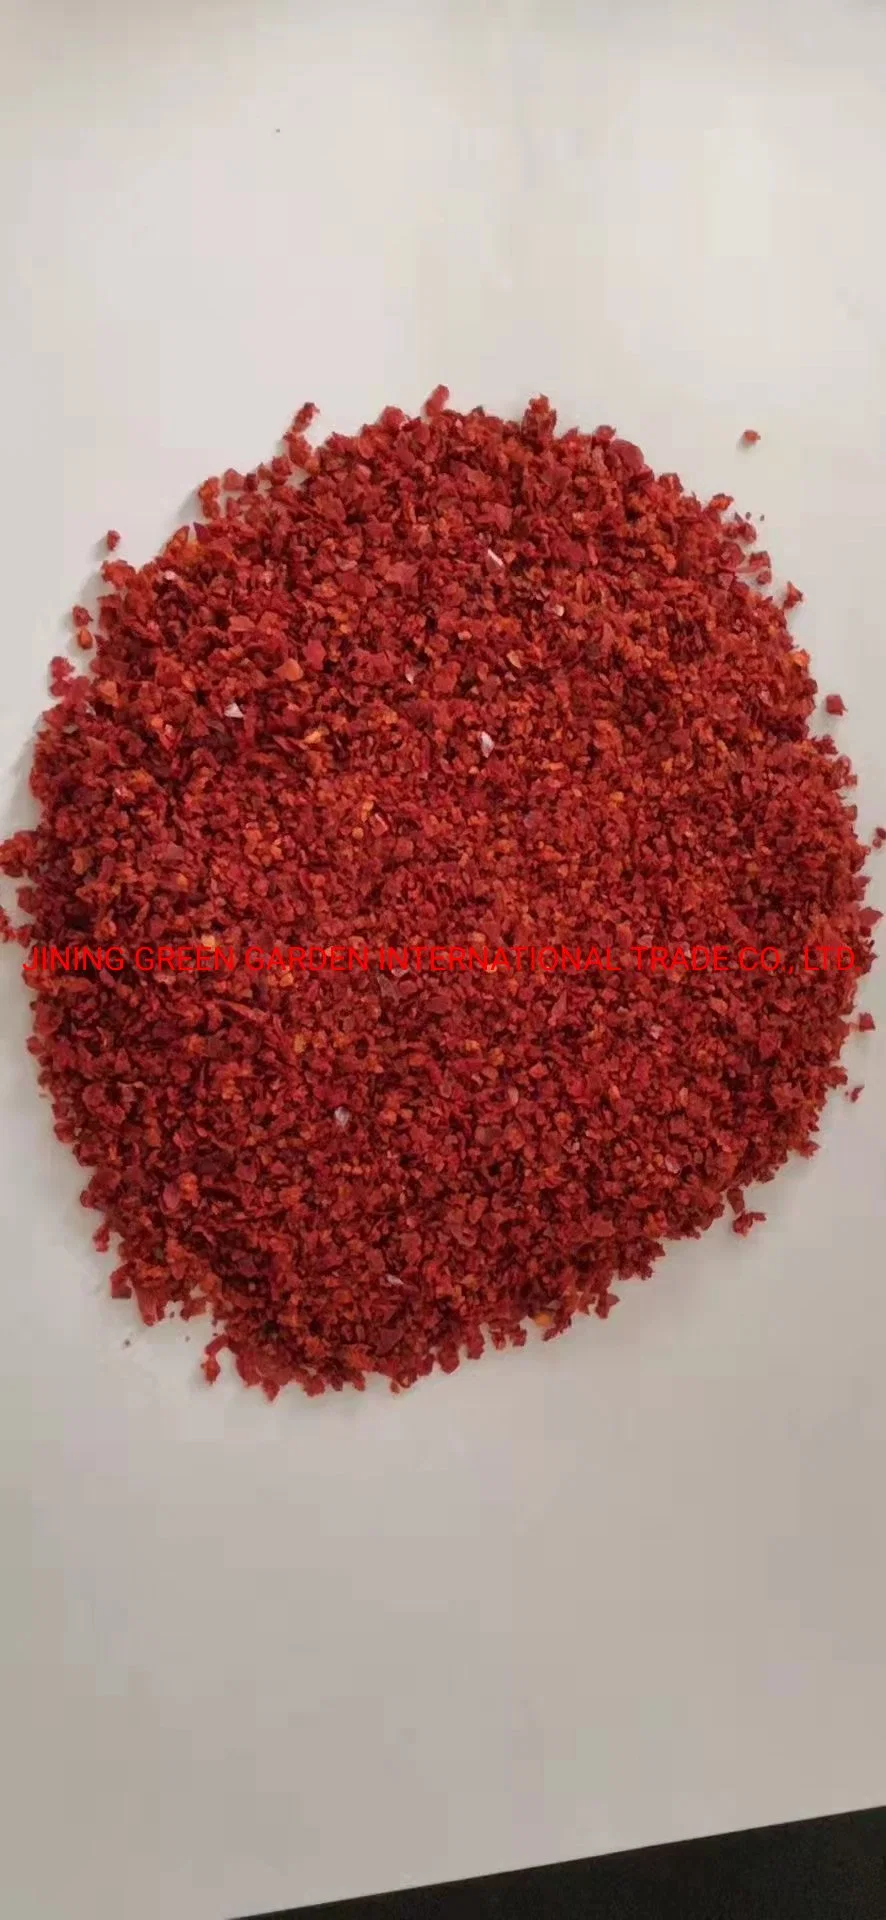 Красный перец порошок наилучшее качество молотый красный перец красный перец чили порошок в Китае одной травы и специи сушеные Raw HACCP